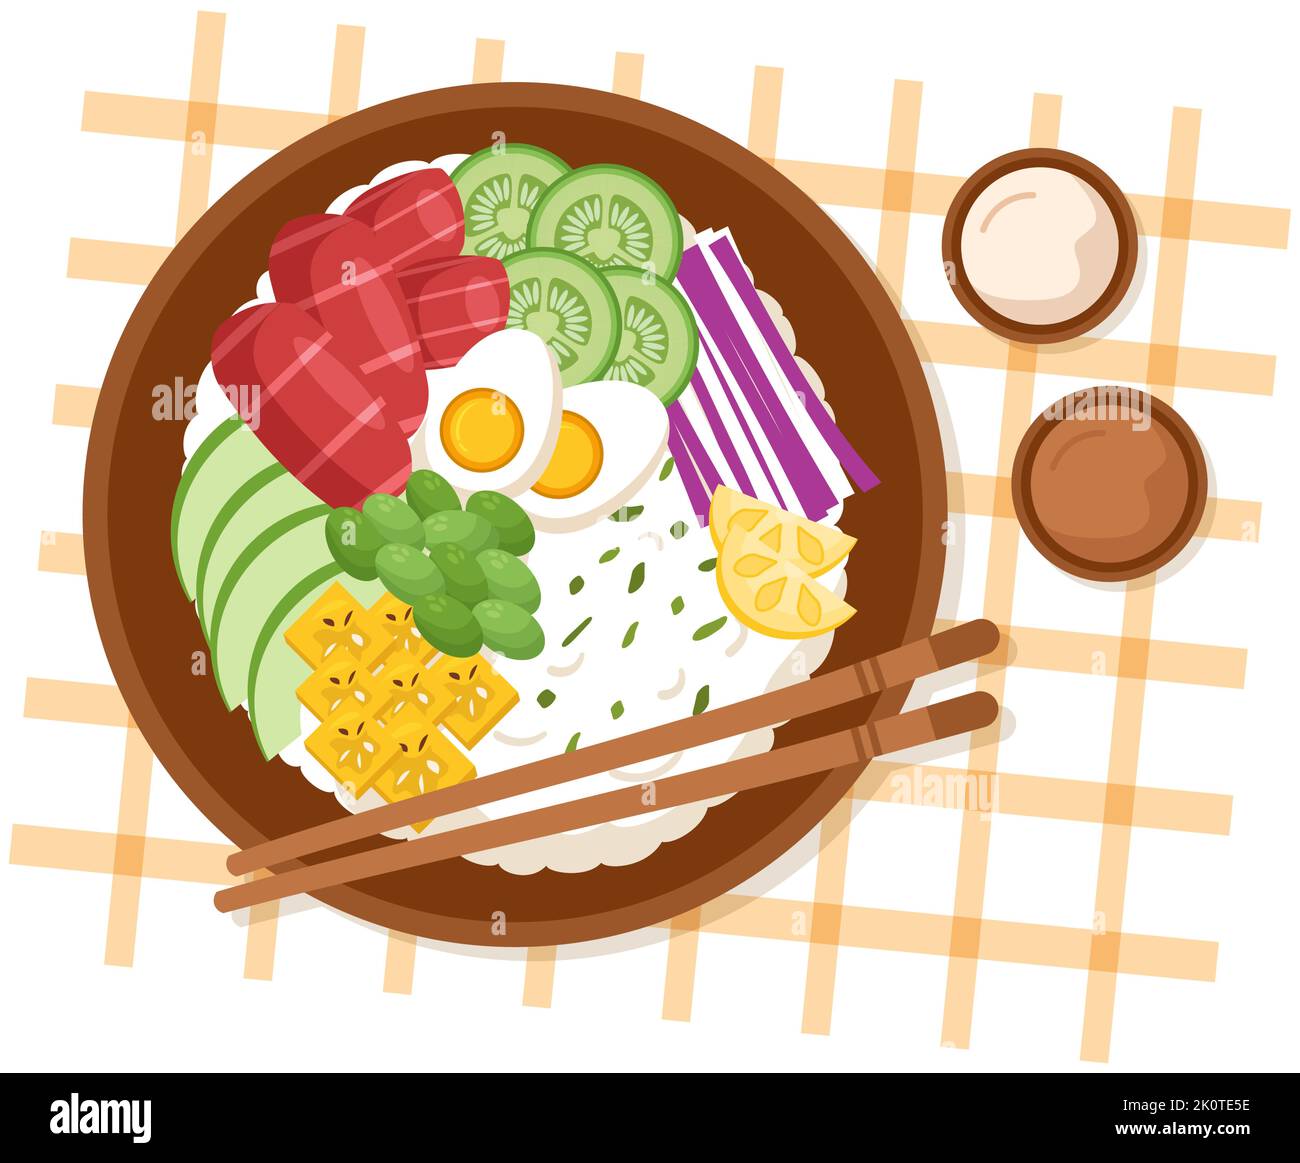 Hawaiianische Teller Poke Bowl Food Template handgezeichnete Cartoon flache Illustration mit Reis, Thunfisch, frischem Fisch, Ei und Gemüse Design Stock Vektor